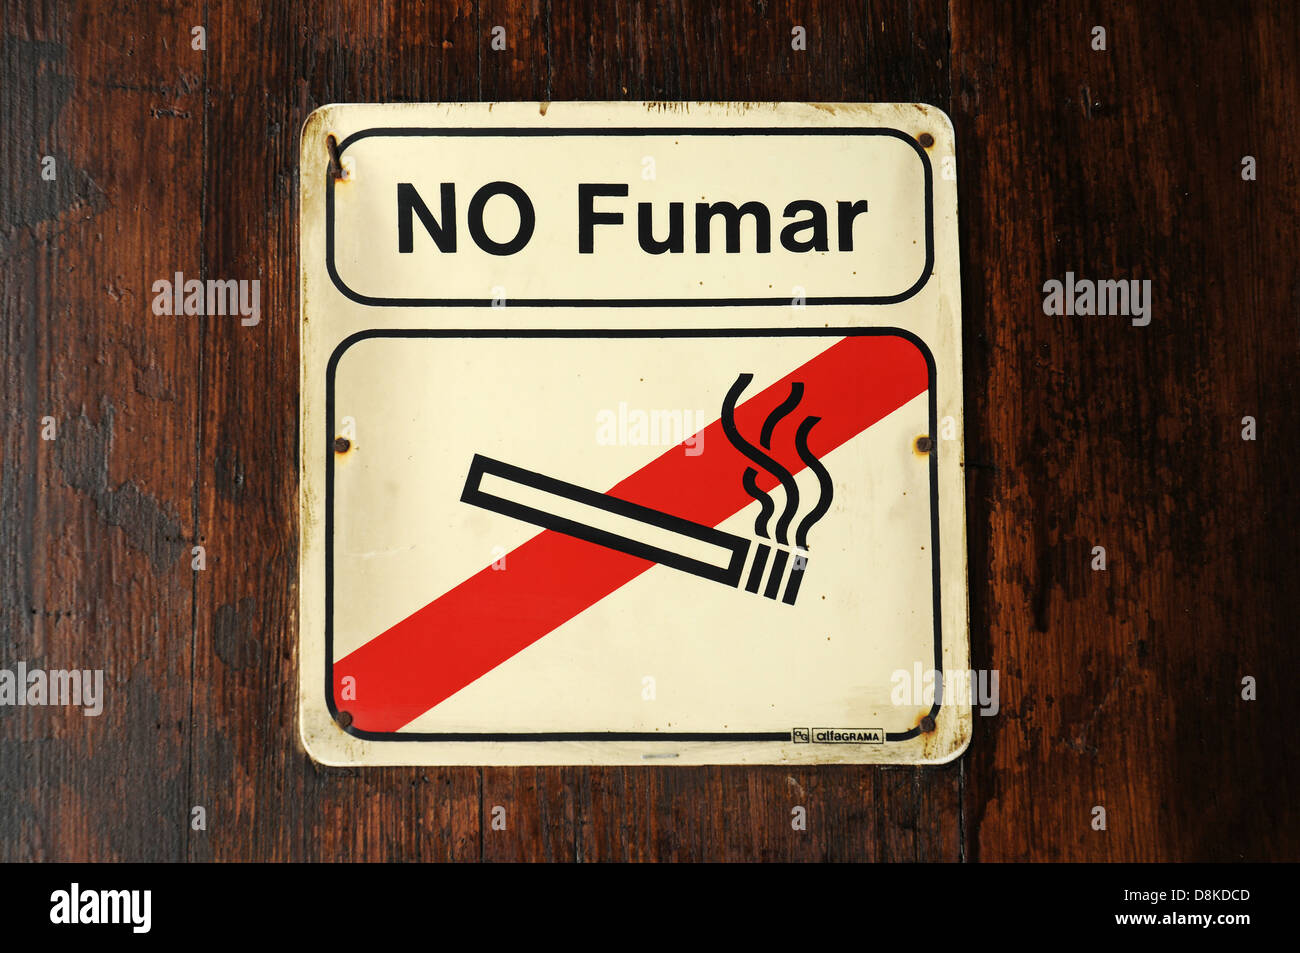 No Fumar Stock Photo